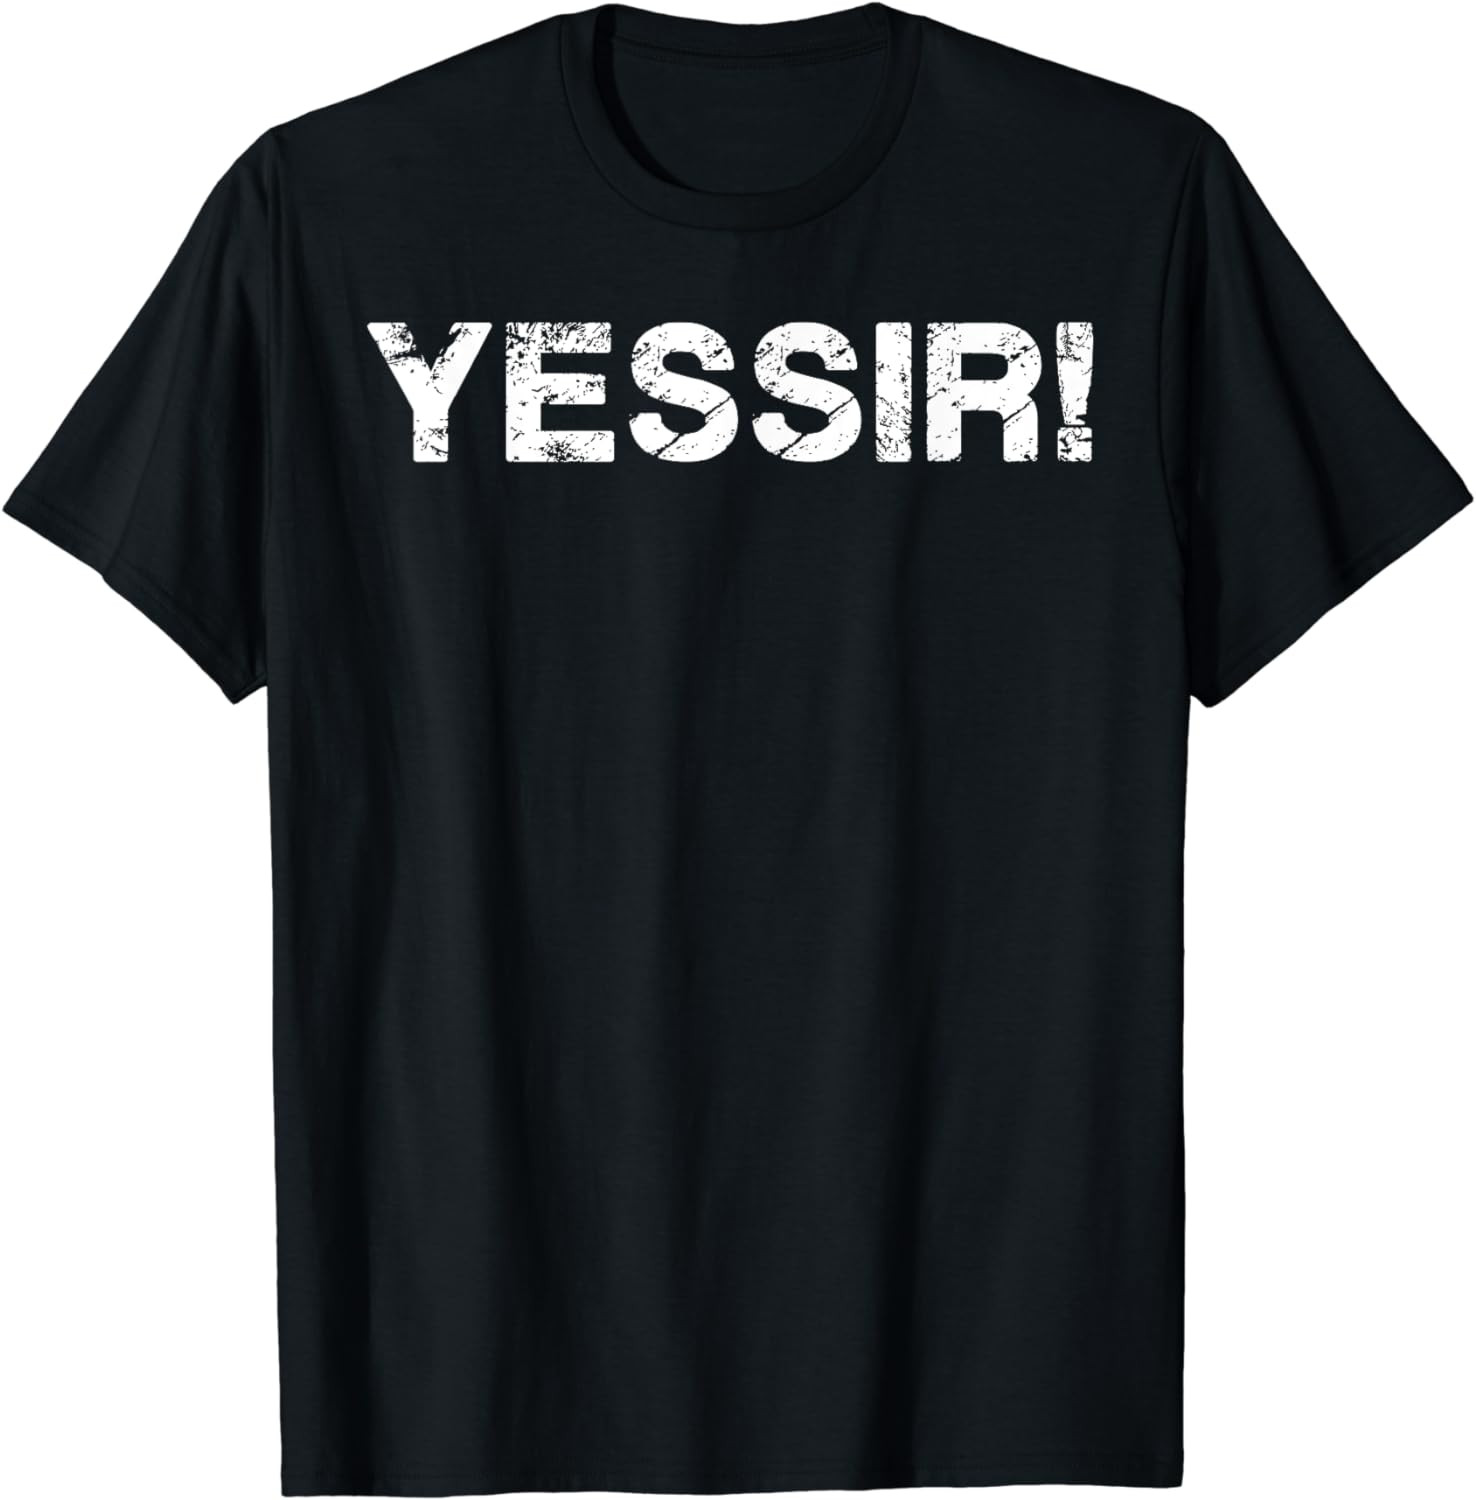 Yessir! T-Shirt